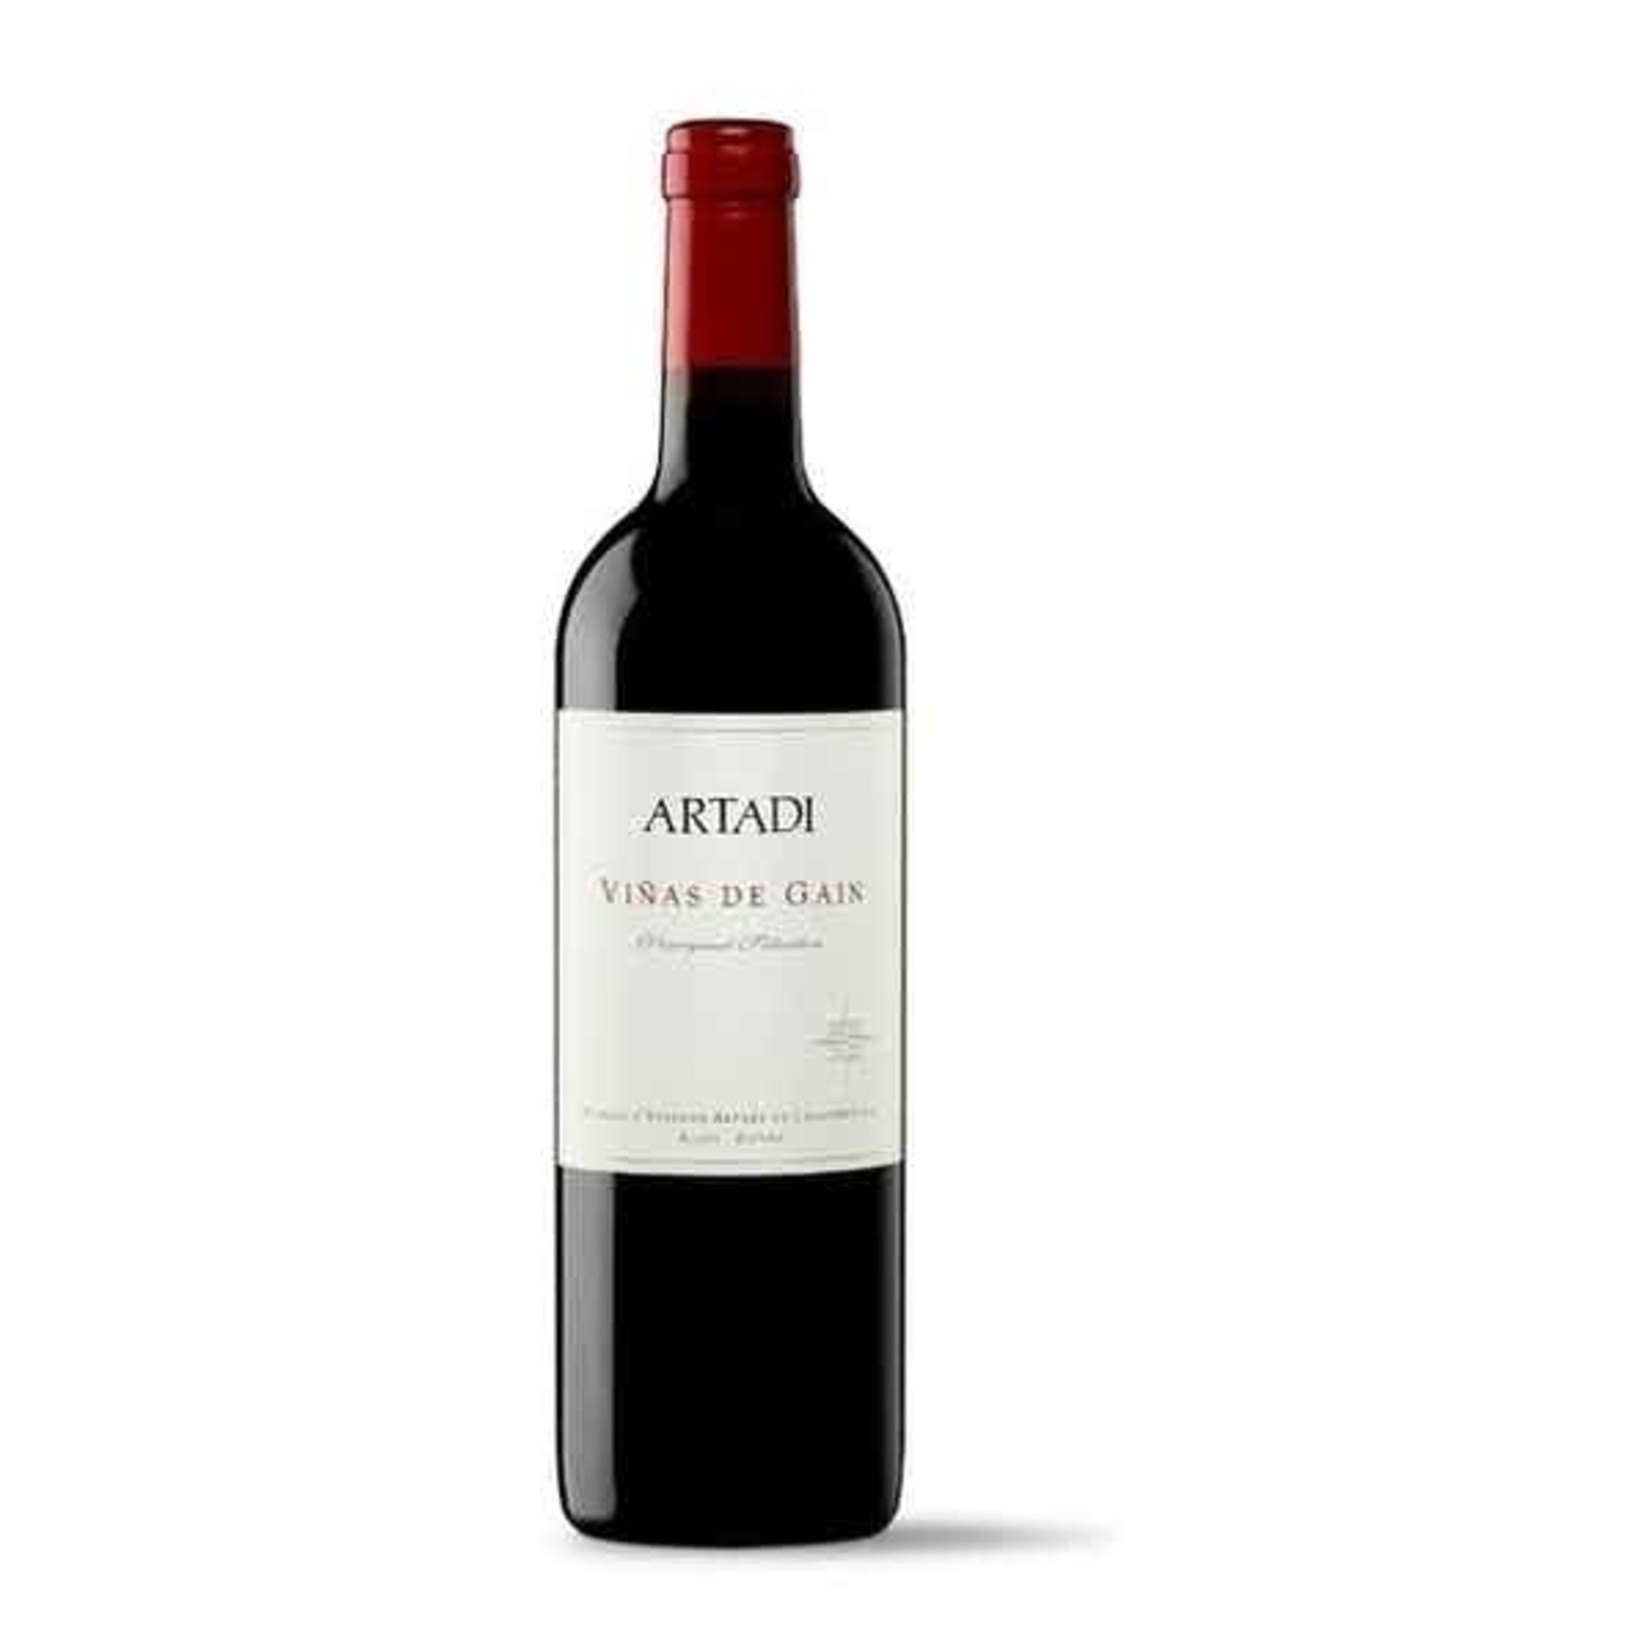 Artadi Artadi Vinas de Gain Rioja